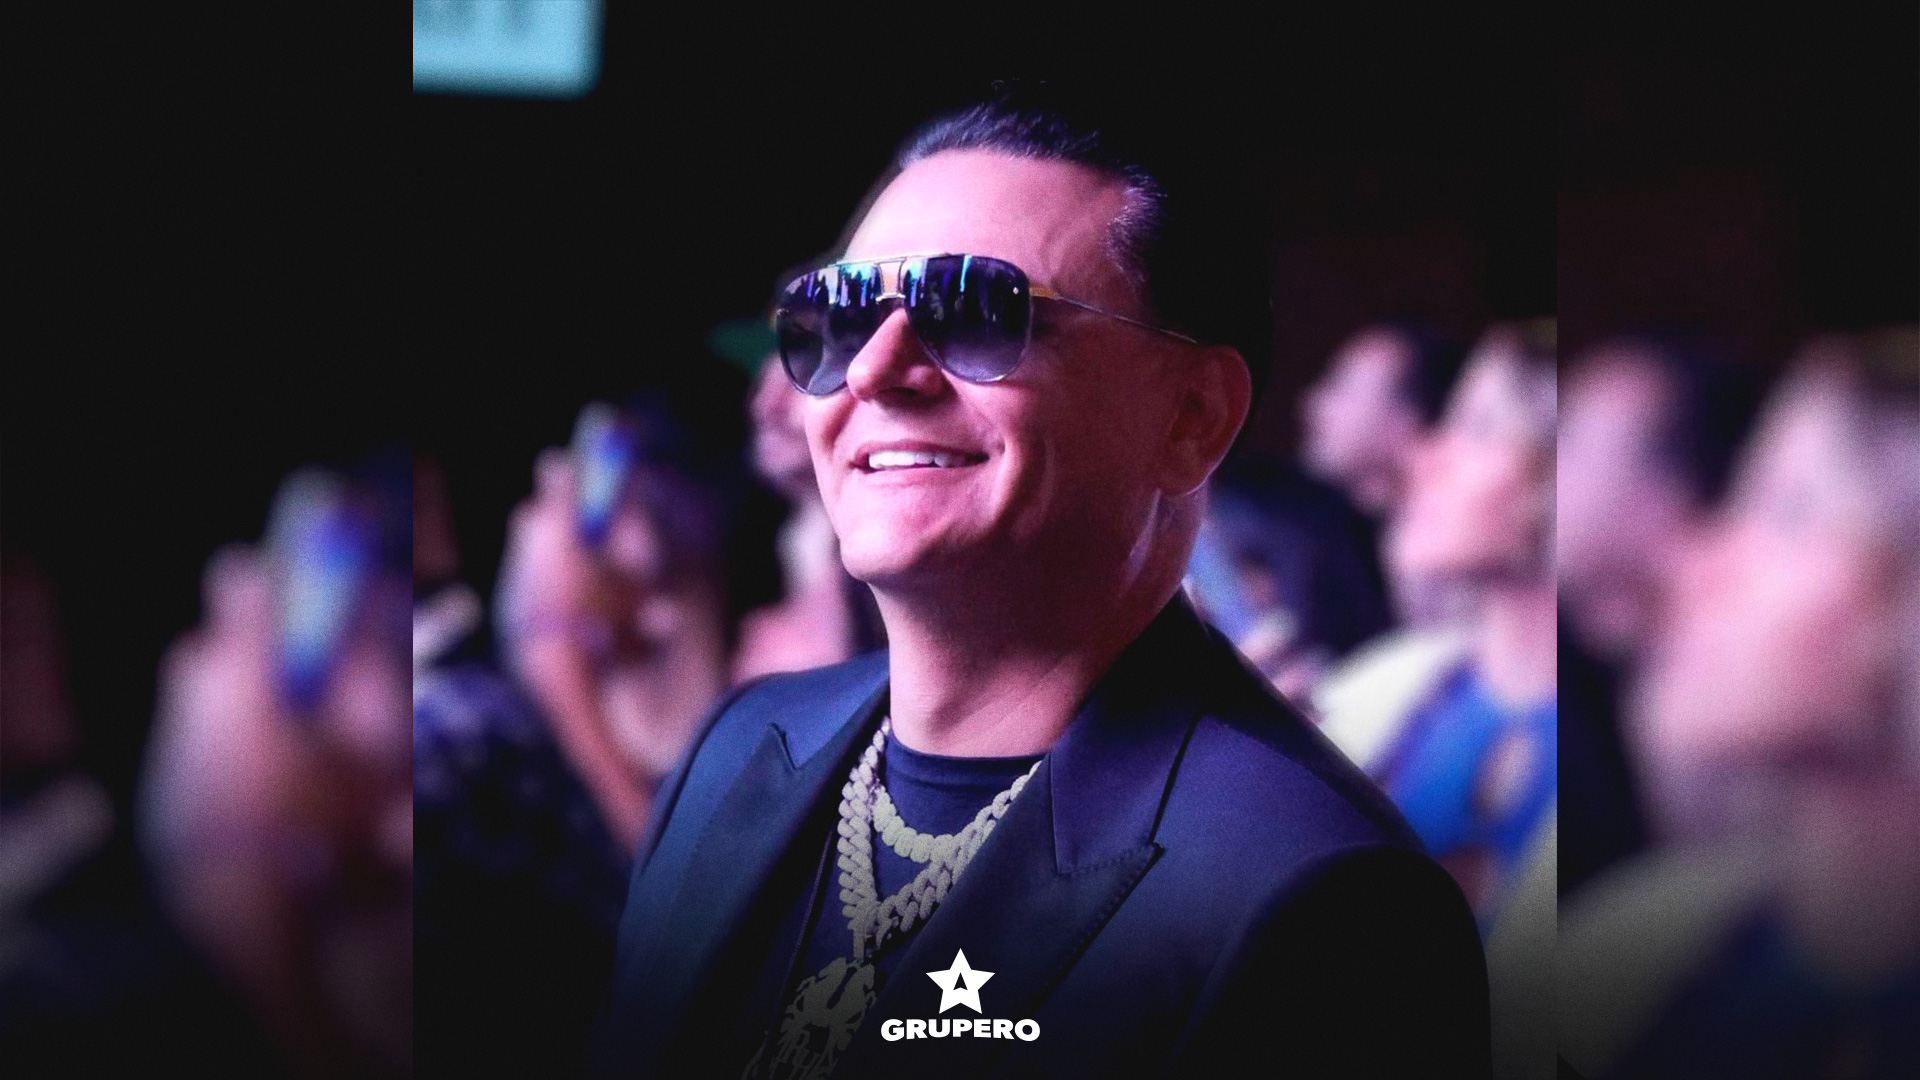 Jimmy Humilde se considera “el padre” de la música urbana mexicana